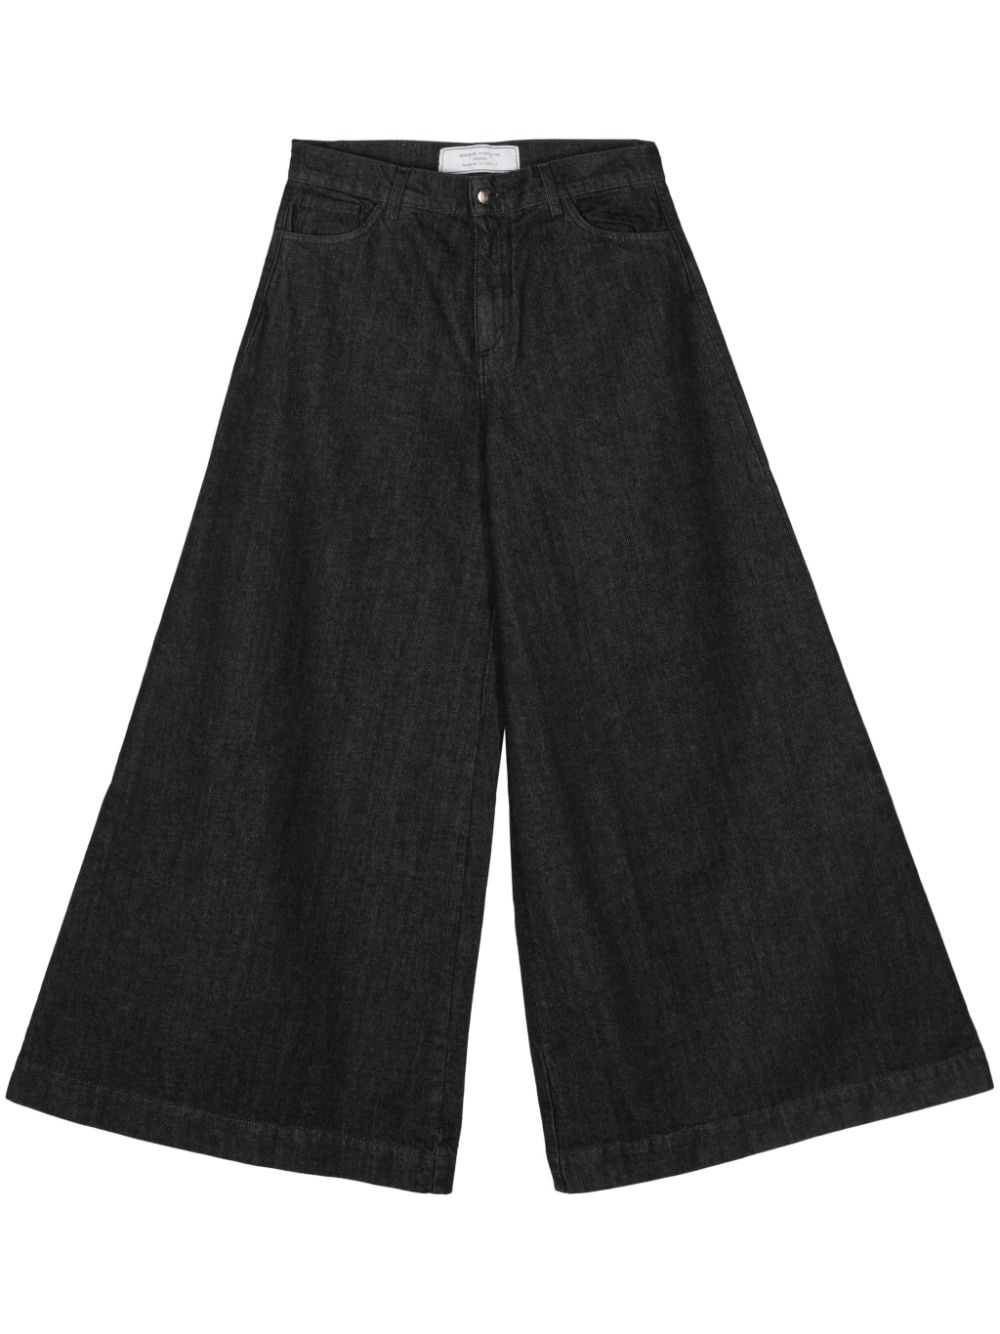 société anonyme wide-leg jeans - noir